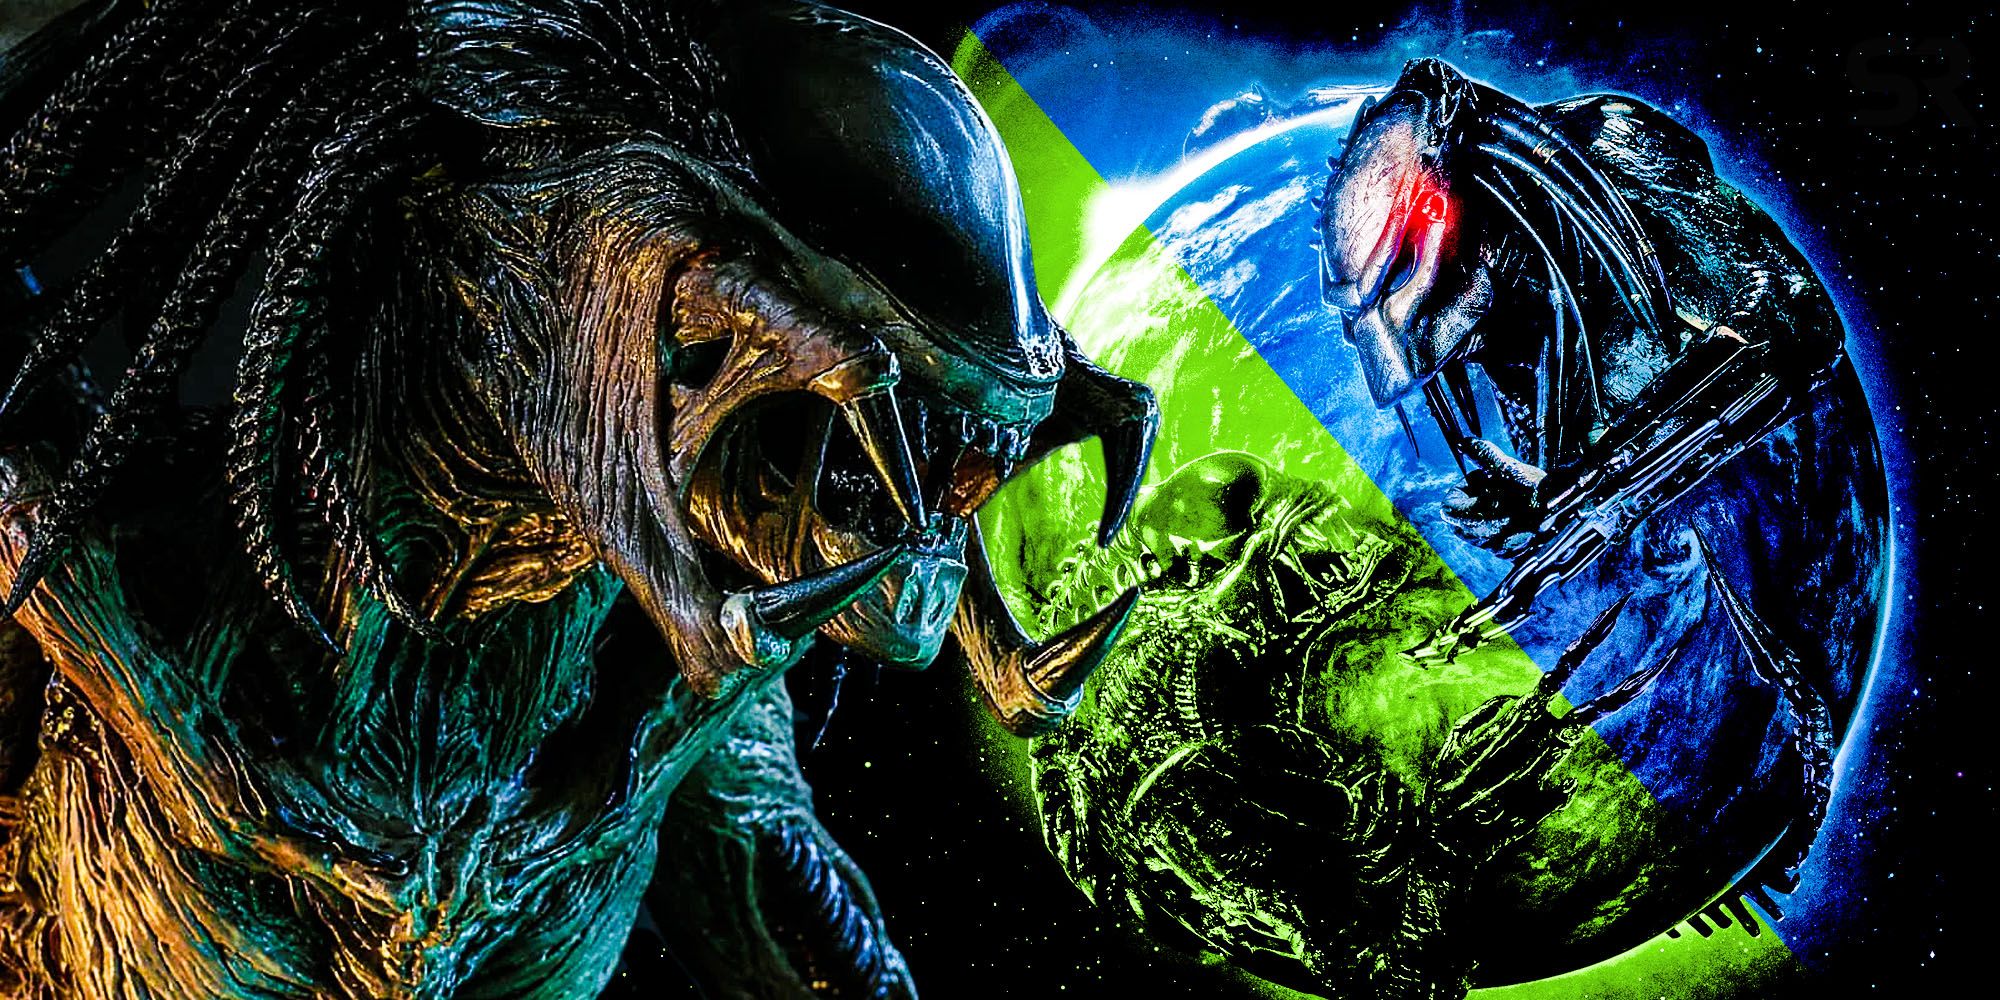 Alien Vs Predator Requiem Almost Killed The Predalien In The Opening Scene